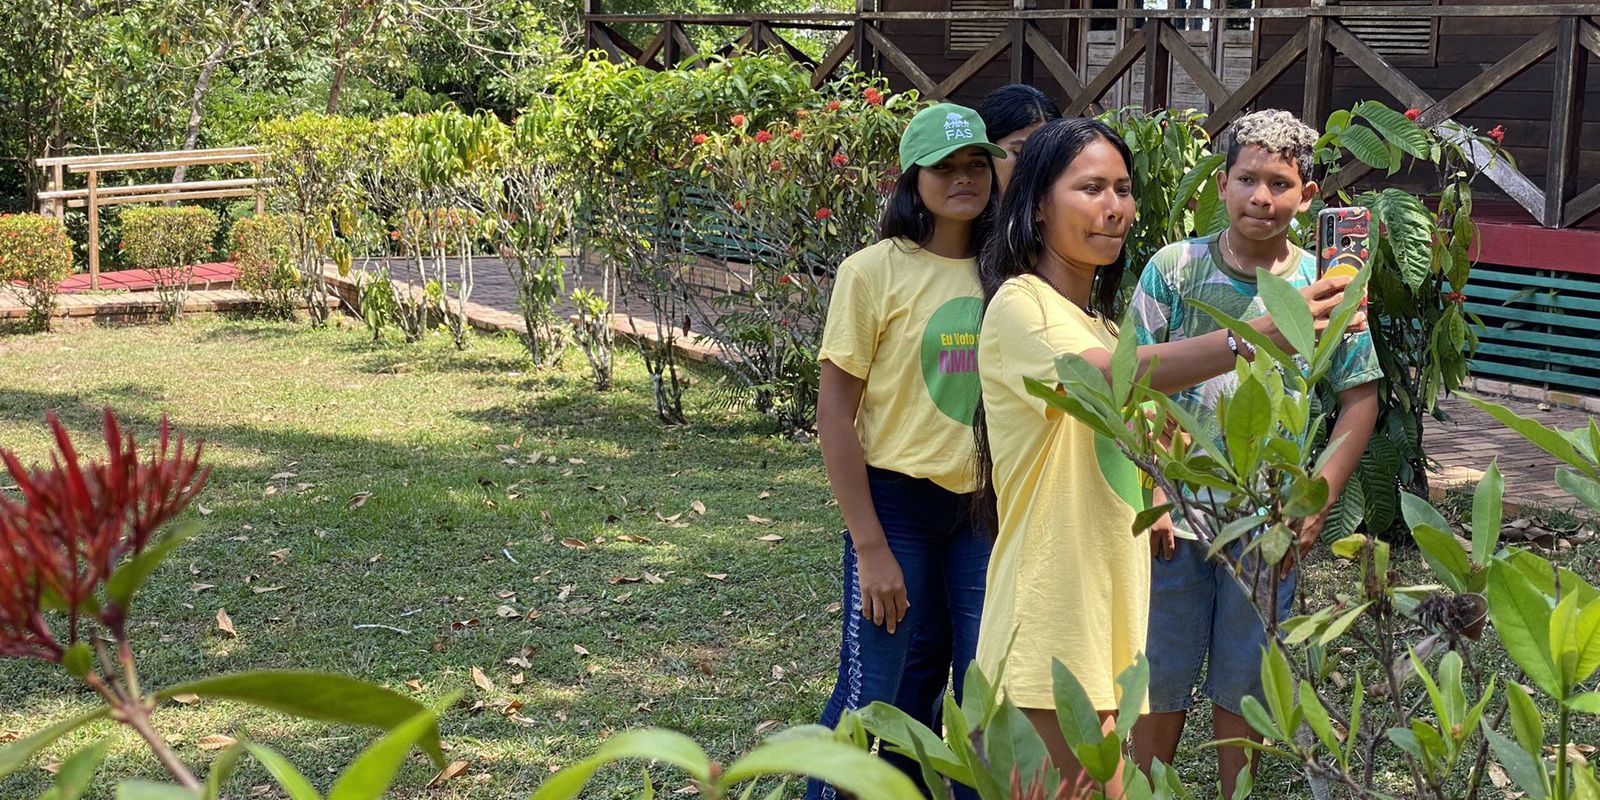 Jovens ribeirinhos no Amazonas viram "repórteres da floresta"